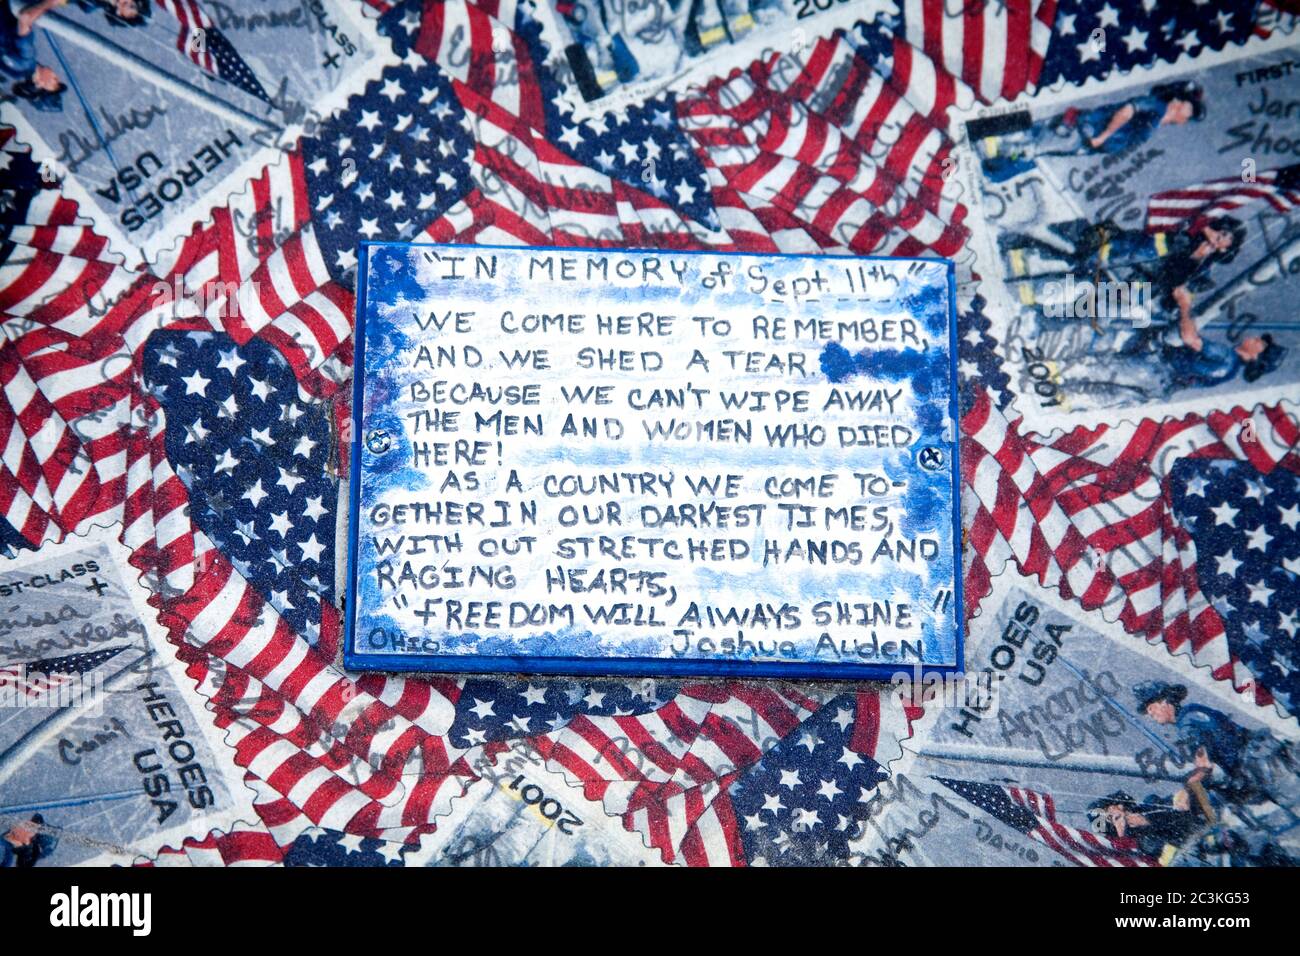 September 11th Memorial, Battery Park, New York City, New York, USA Stock Photo